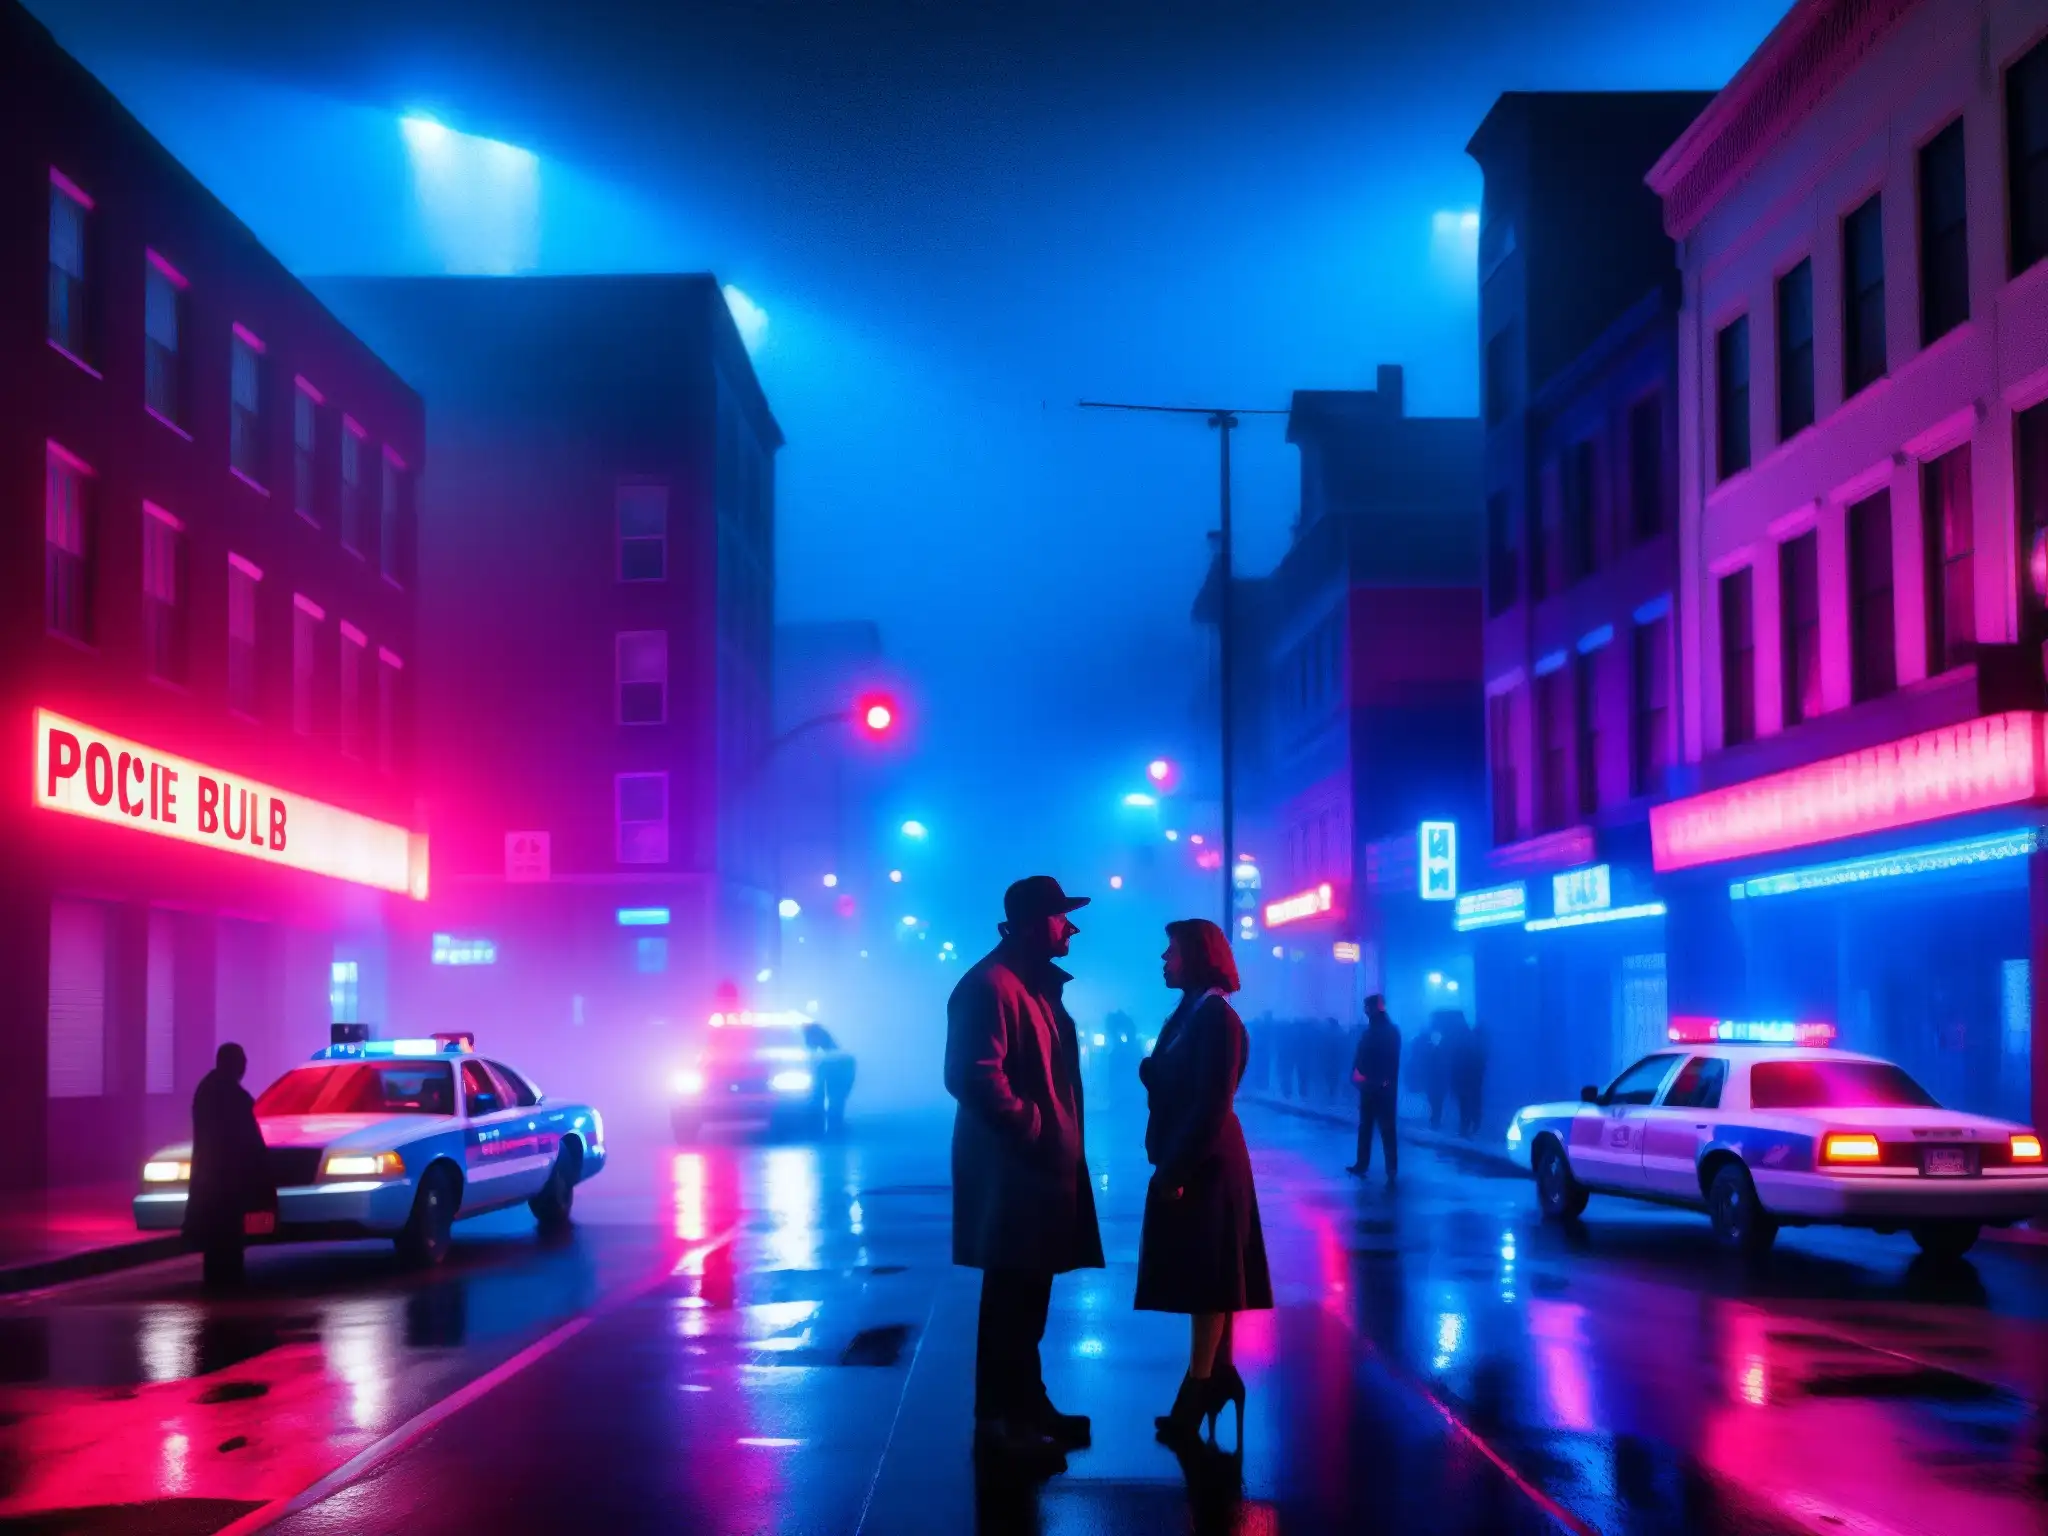 Una atmósfera nocturna y tensa en la ciudad captura las relaciones tóxicas leyendas urbanas, representada por una pareja discutiendo bajo las luces de neón y policiales